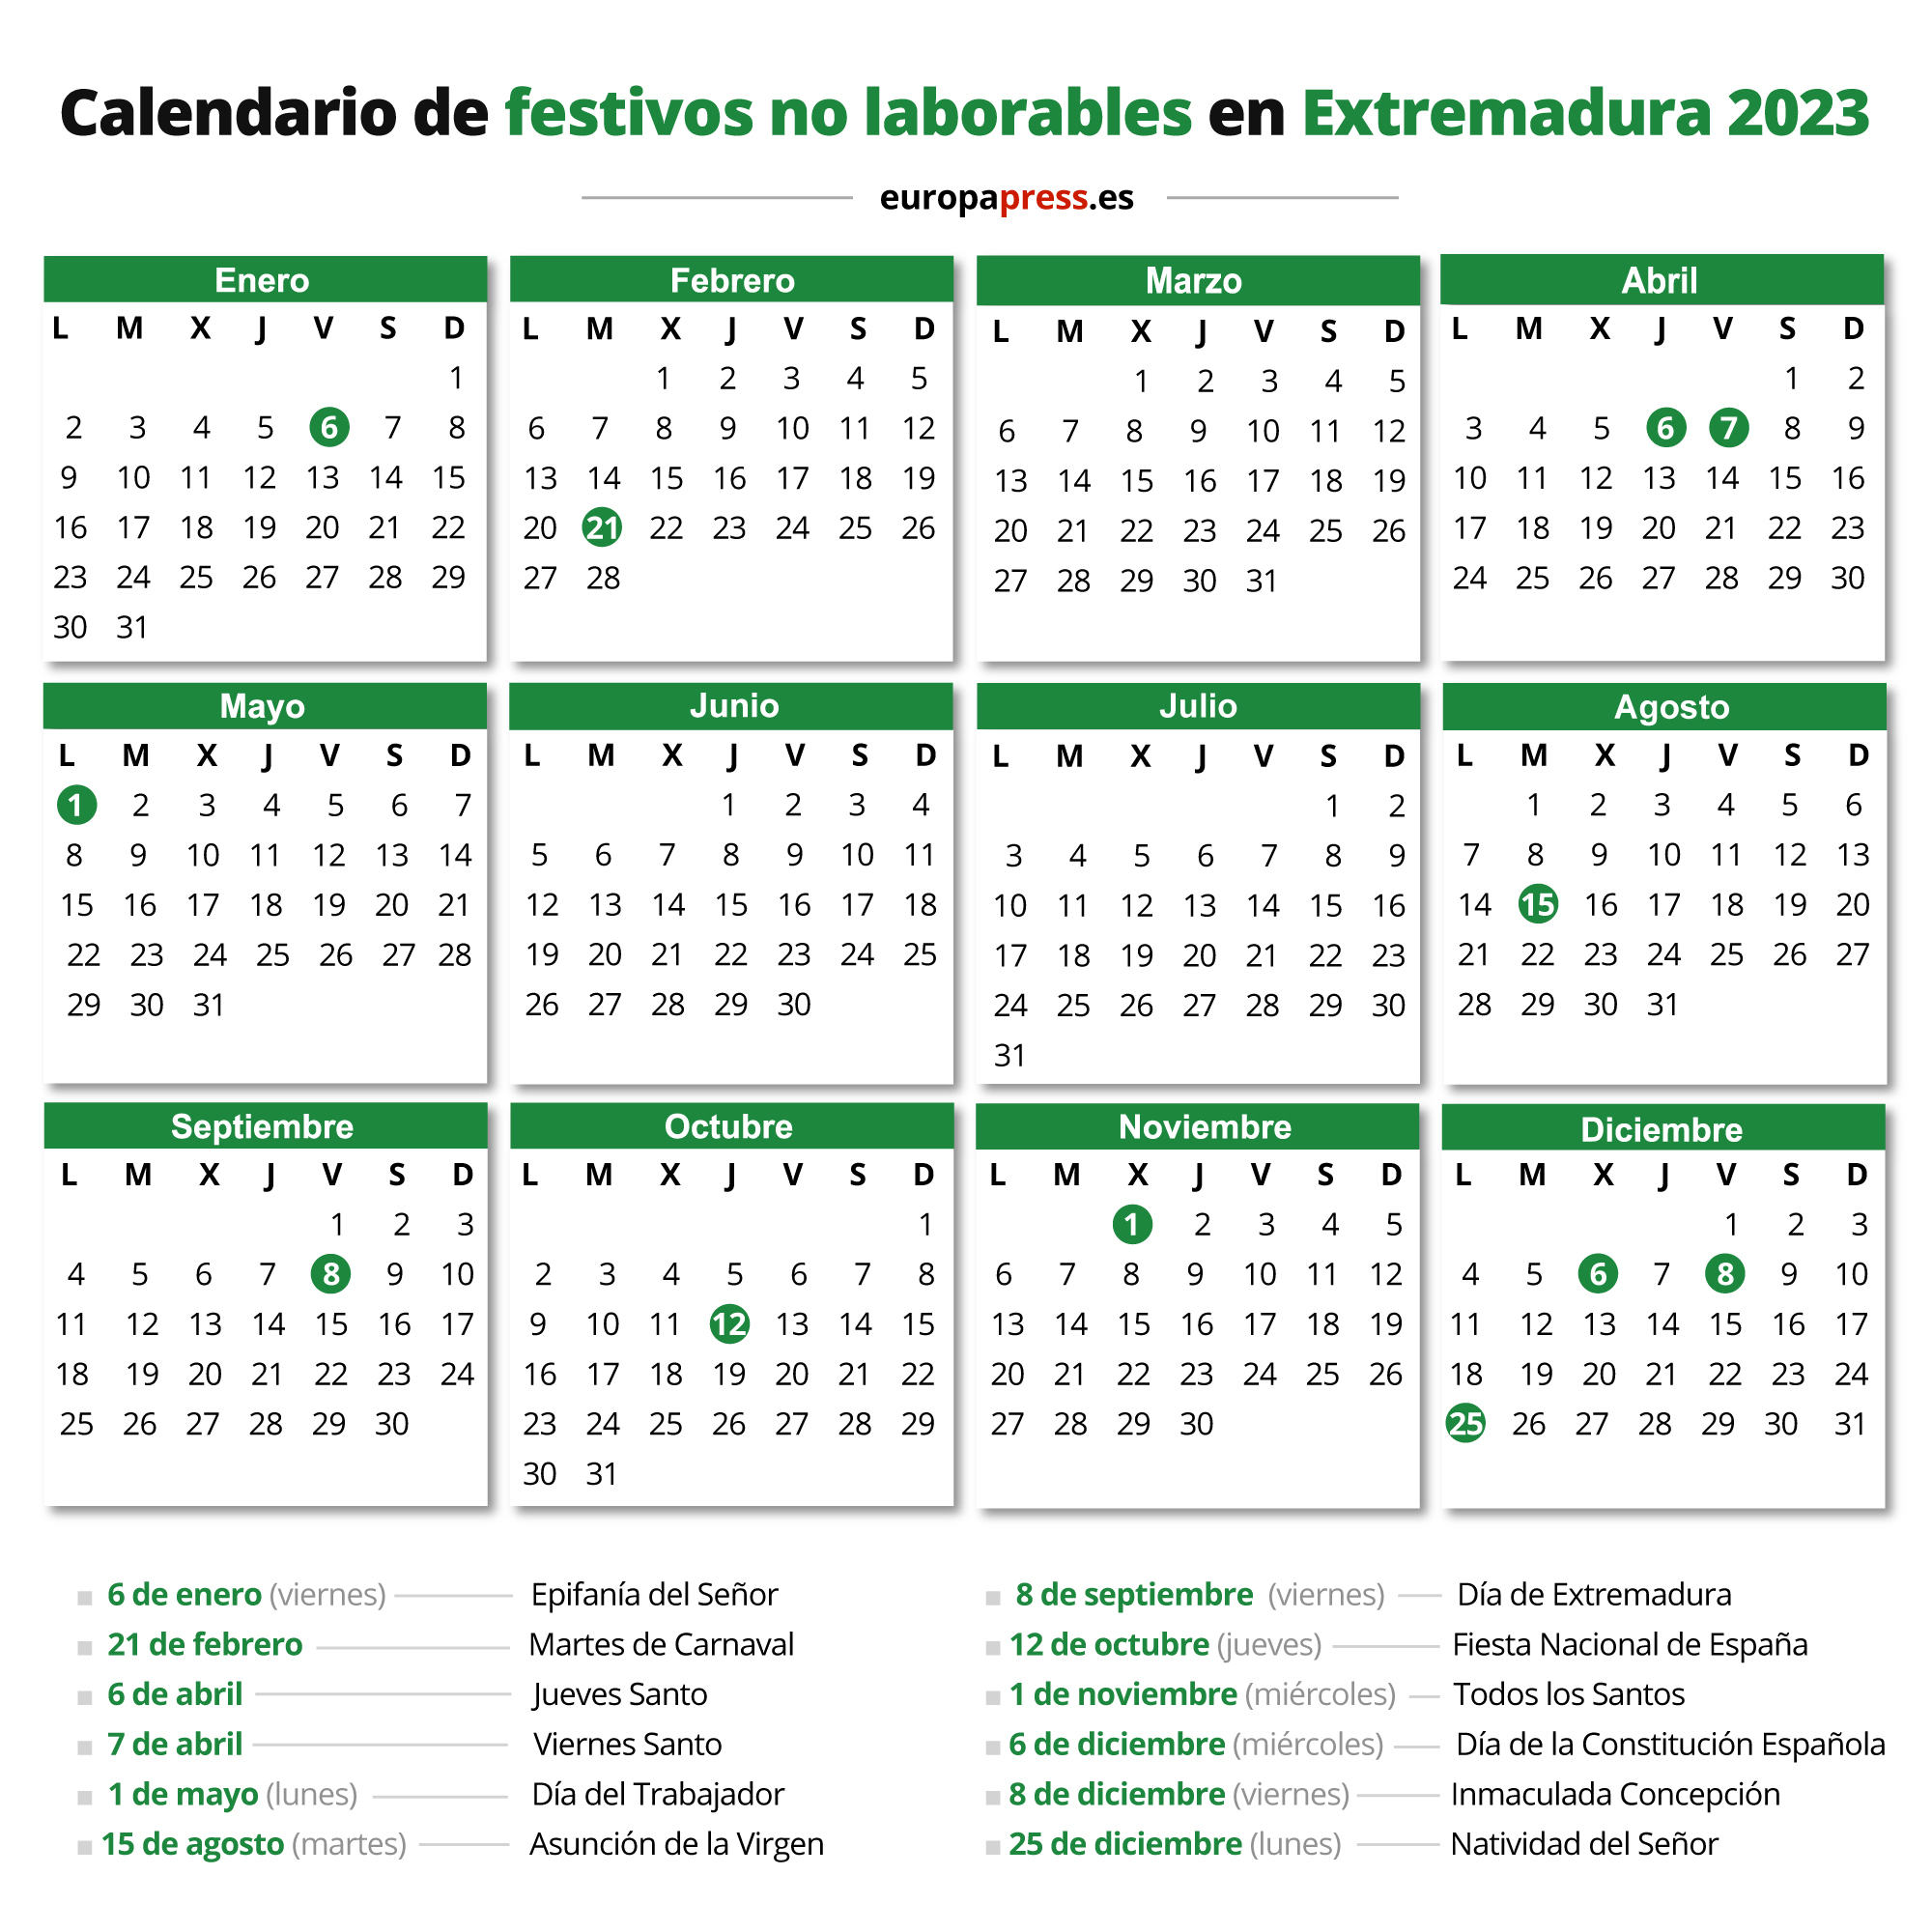 Calendario de festivos no laborables en Extremadura 2023